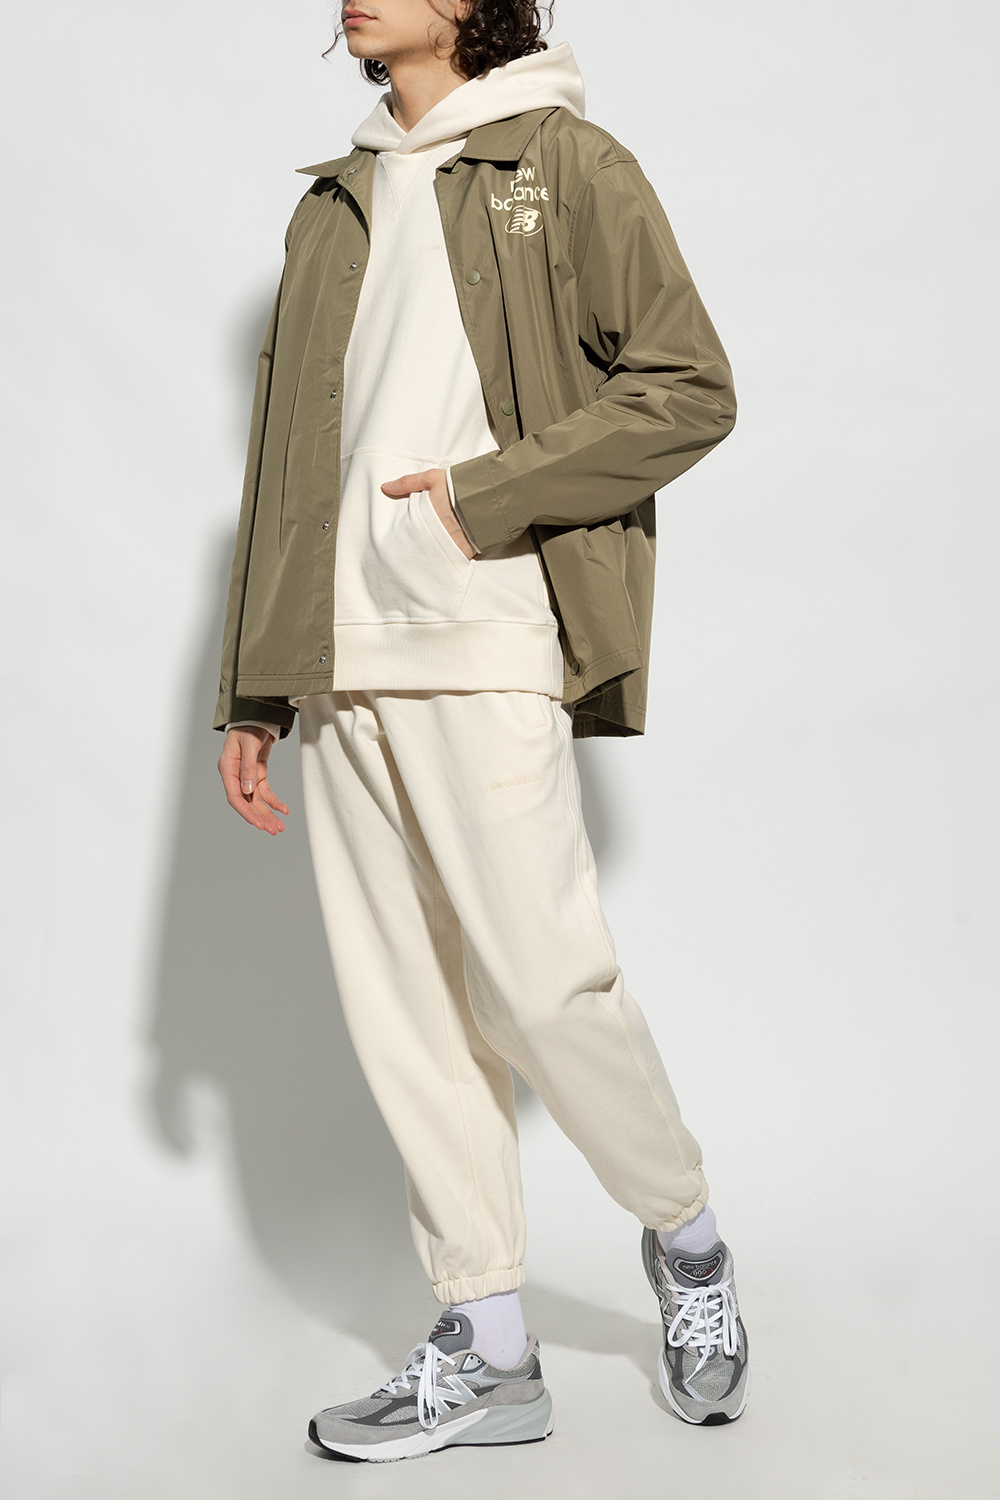 New Balance Jacket with logo | Men's Clothing | Vitkac